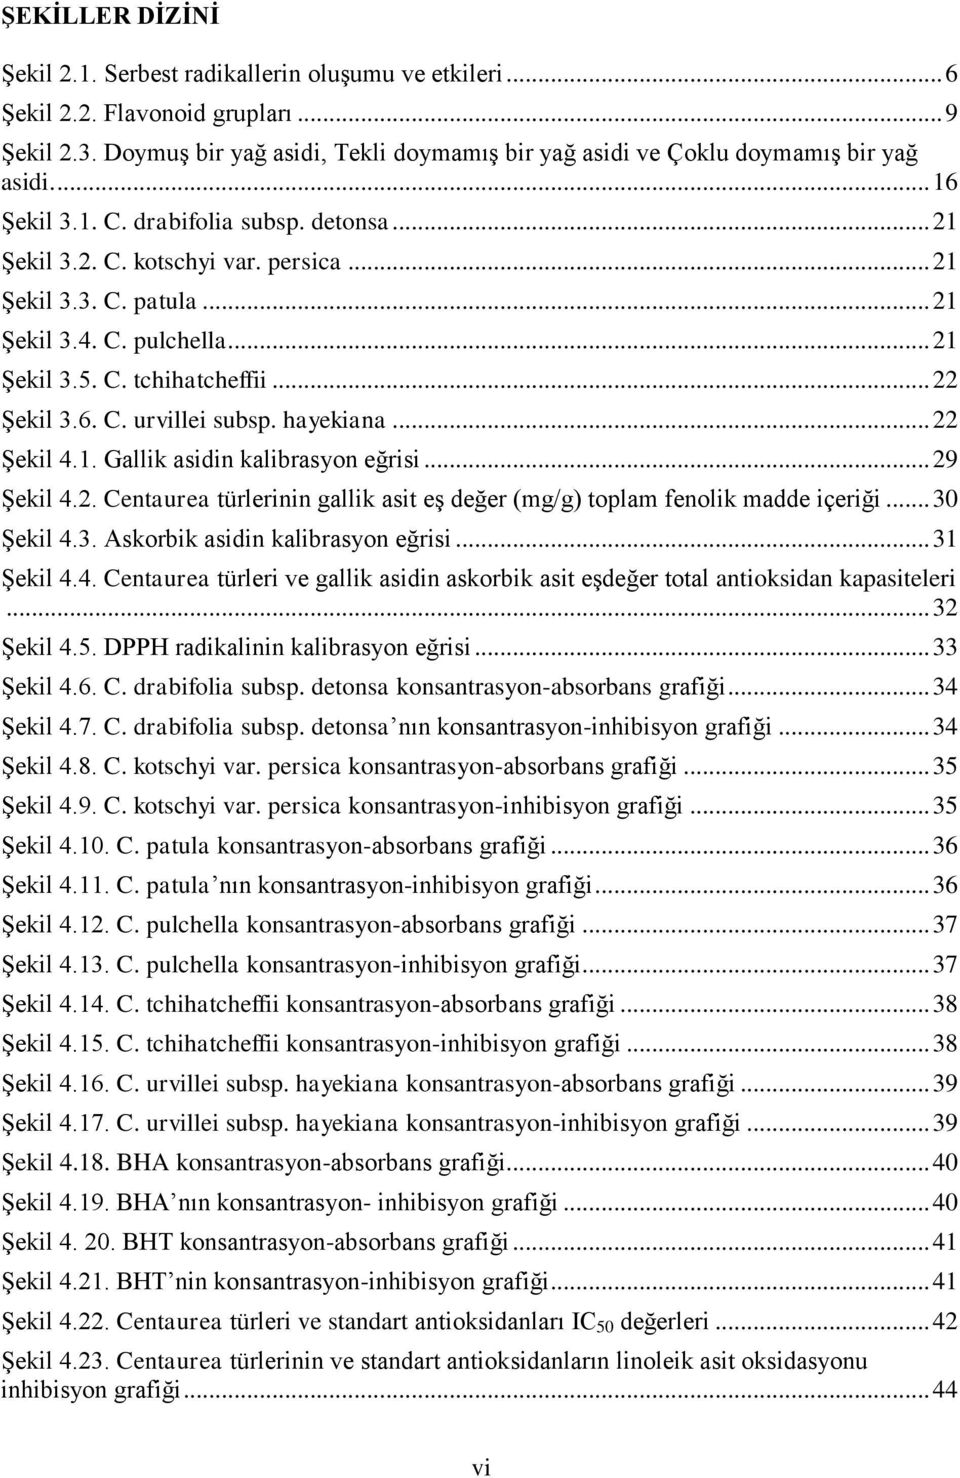 .. 21 Şekil 3.4. C. pulchella... 21 Şekil 3.5. C. tchihatcheffii... 22 Şekil 3.6. C. urvillei subsp. hayekiana... 22 Şekil 4.1. Gallik asidin kalibrasyon eğrisi... 29 Şekil 4.2. Centaurea türlerinin gallik asit eş değer (mg/g) toplam fenolik madde içeriği.